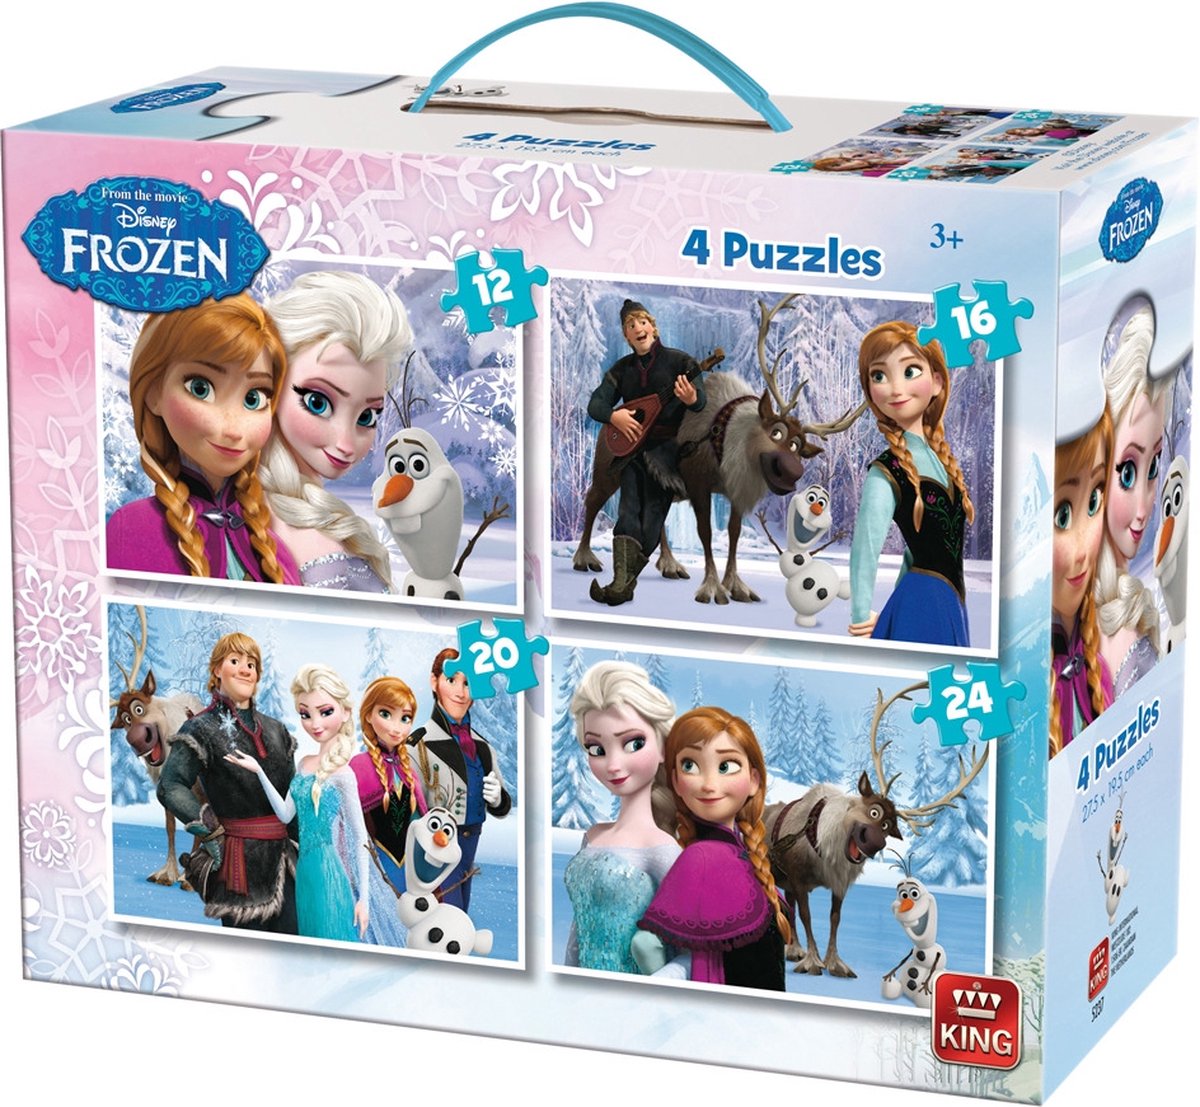 Disney Frozen Puzzel - 4-in-1 koffer - 12, 16, 20 & 24 stukjes - Disney Frozen